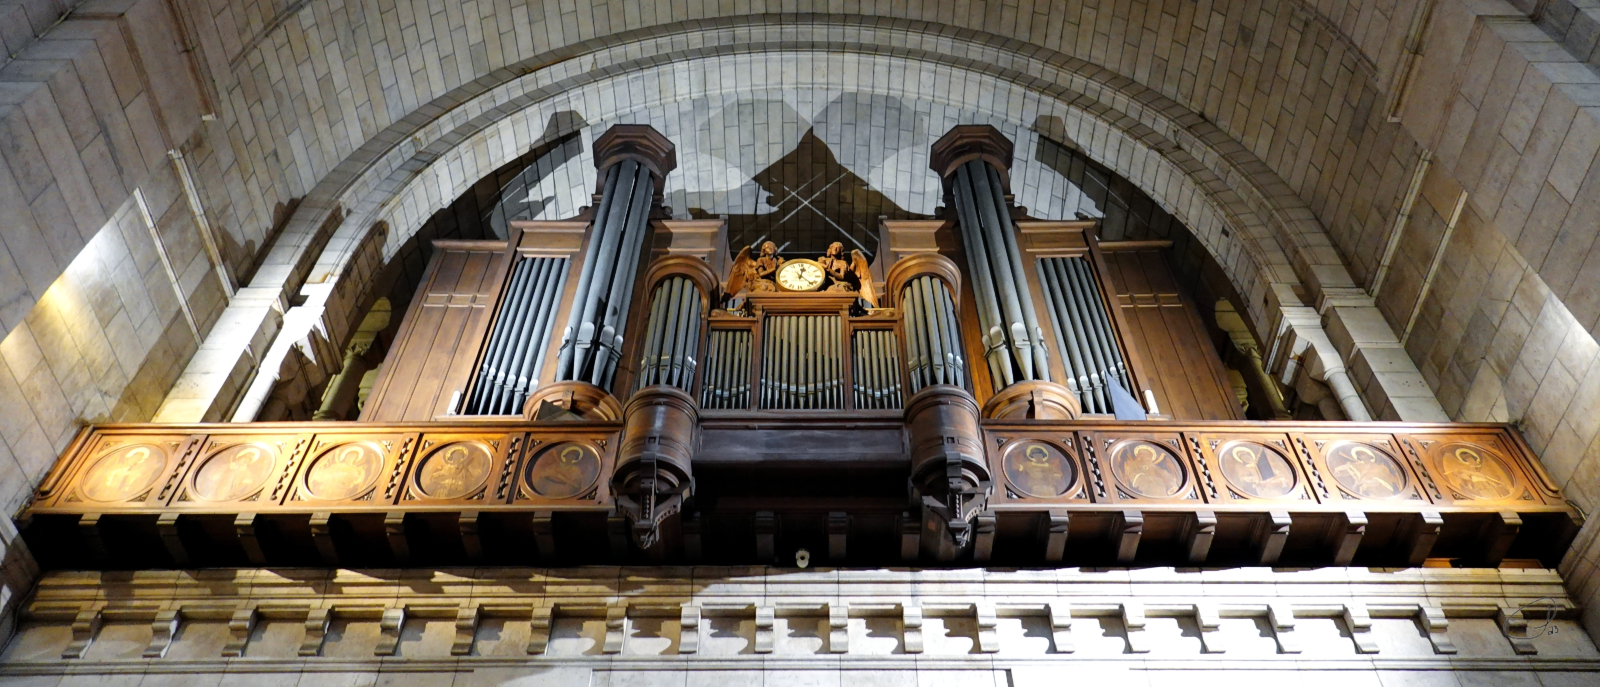 Basilique Sacr-Coeur - Organ Pipes